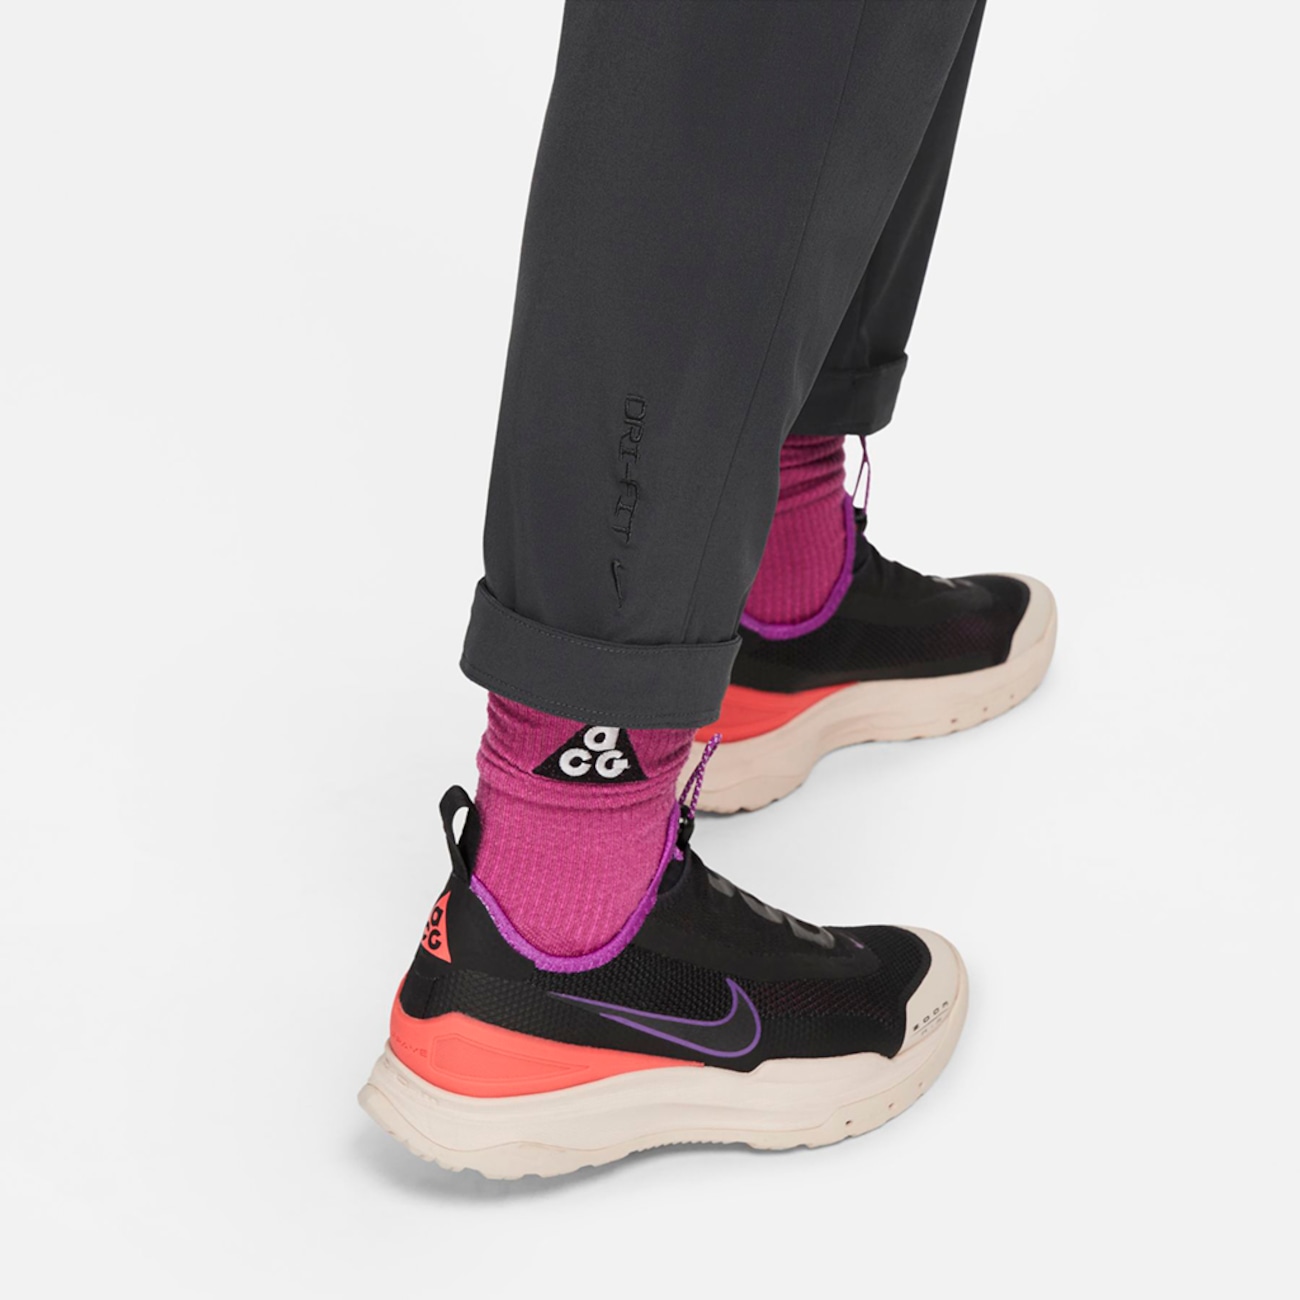 Legging Nike Dri-FIT ADV ACG New Sands Feminina da Nike com menor preço -  Melhor Comprar